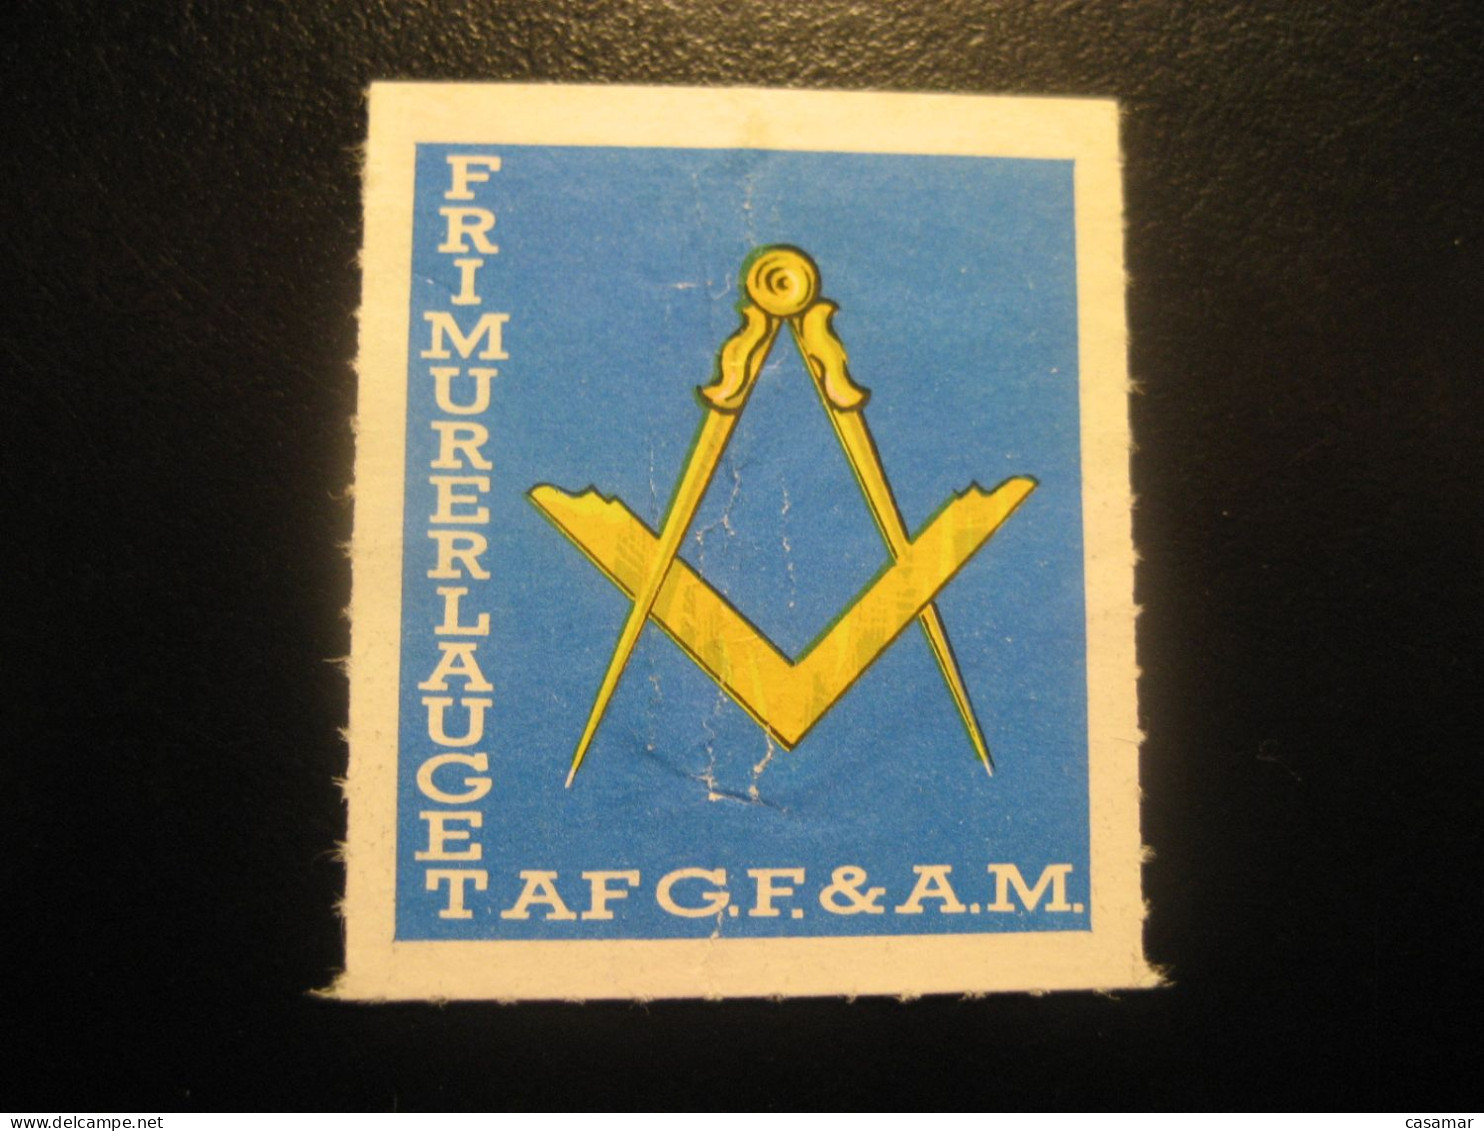 Frimurerlauget AF G.F. & A.M. Freemasonry Masonry Masonic Lodge Perces Zig Zag Poster Stamp Vignette DENMARK Label - Freimaurerei